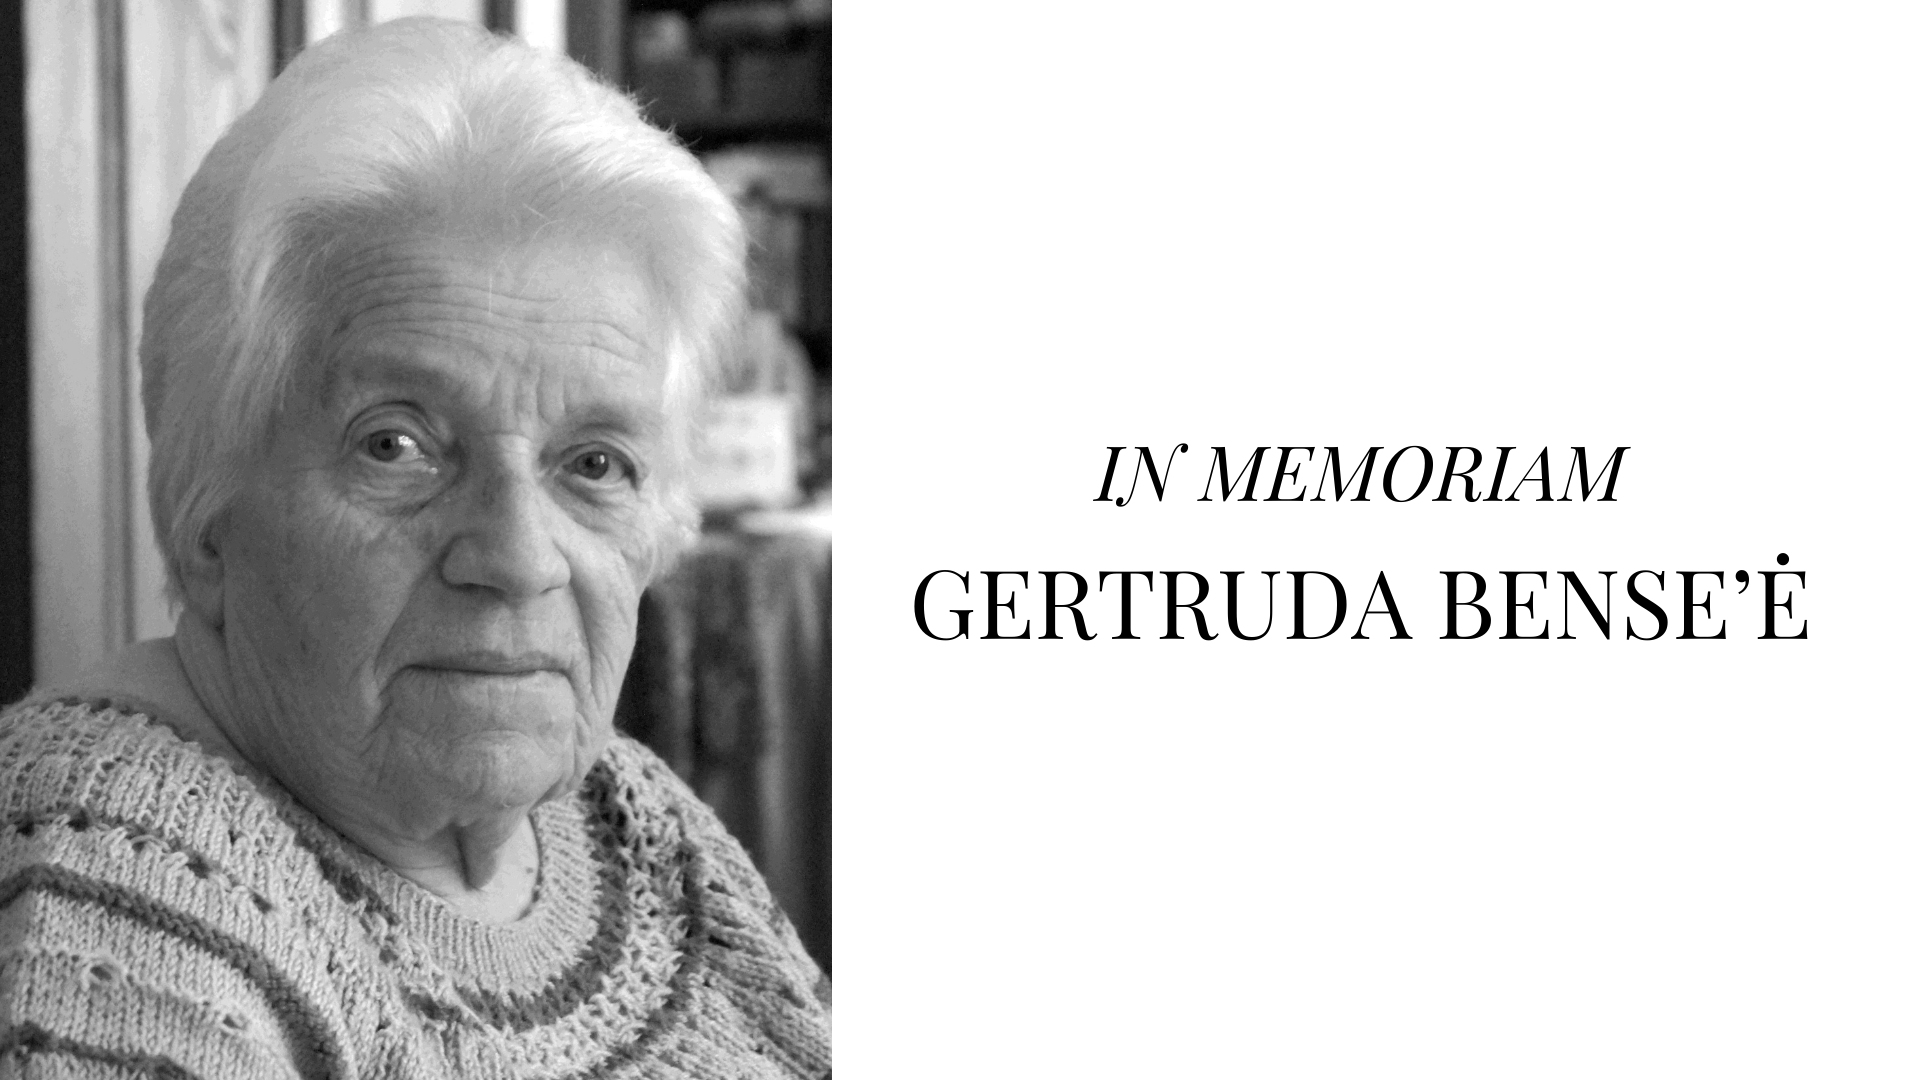 In memoriam. Dr. Gertruda Bense’ė, vokiečių baltistė, senosios lietuvių raštijos tyrėja